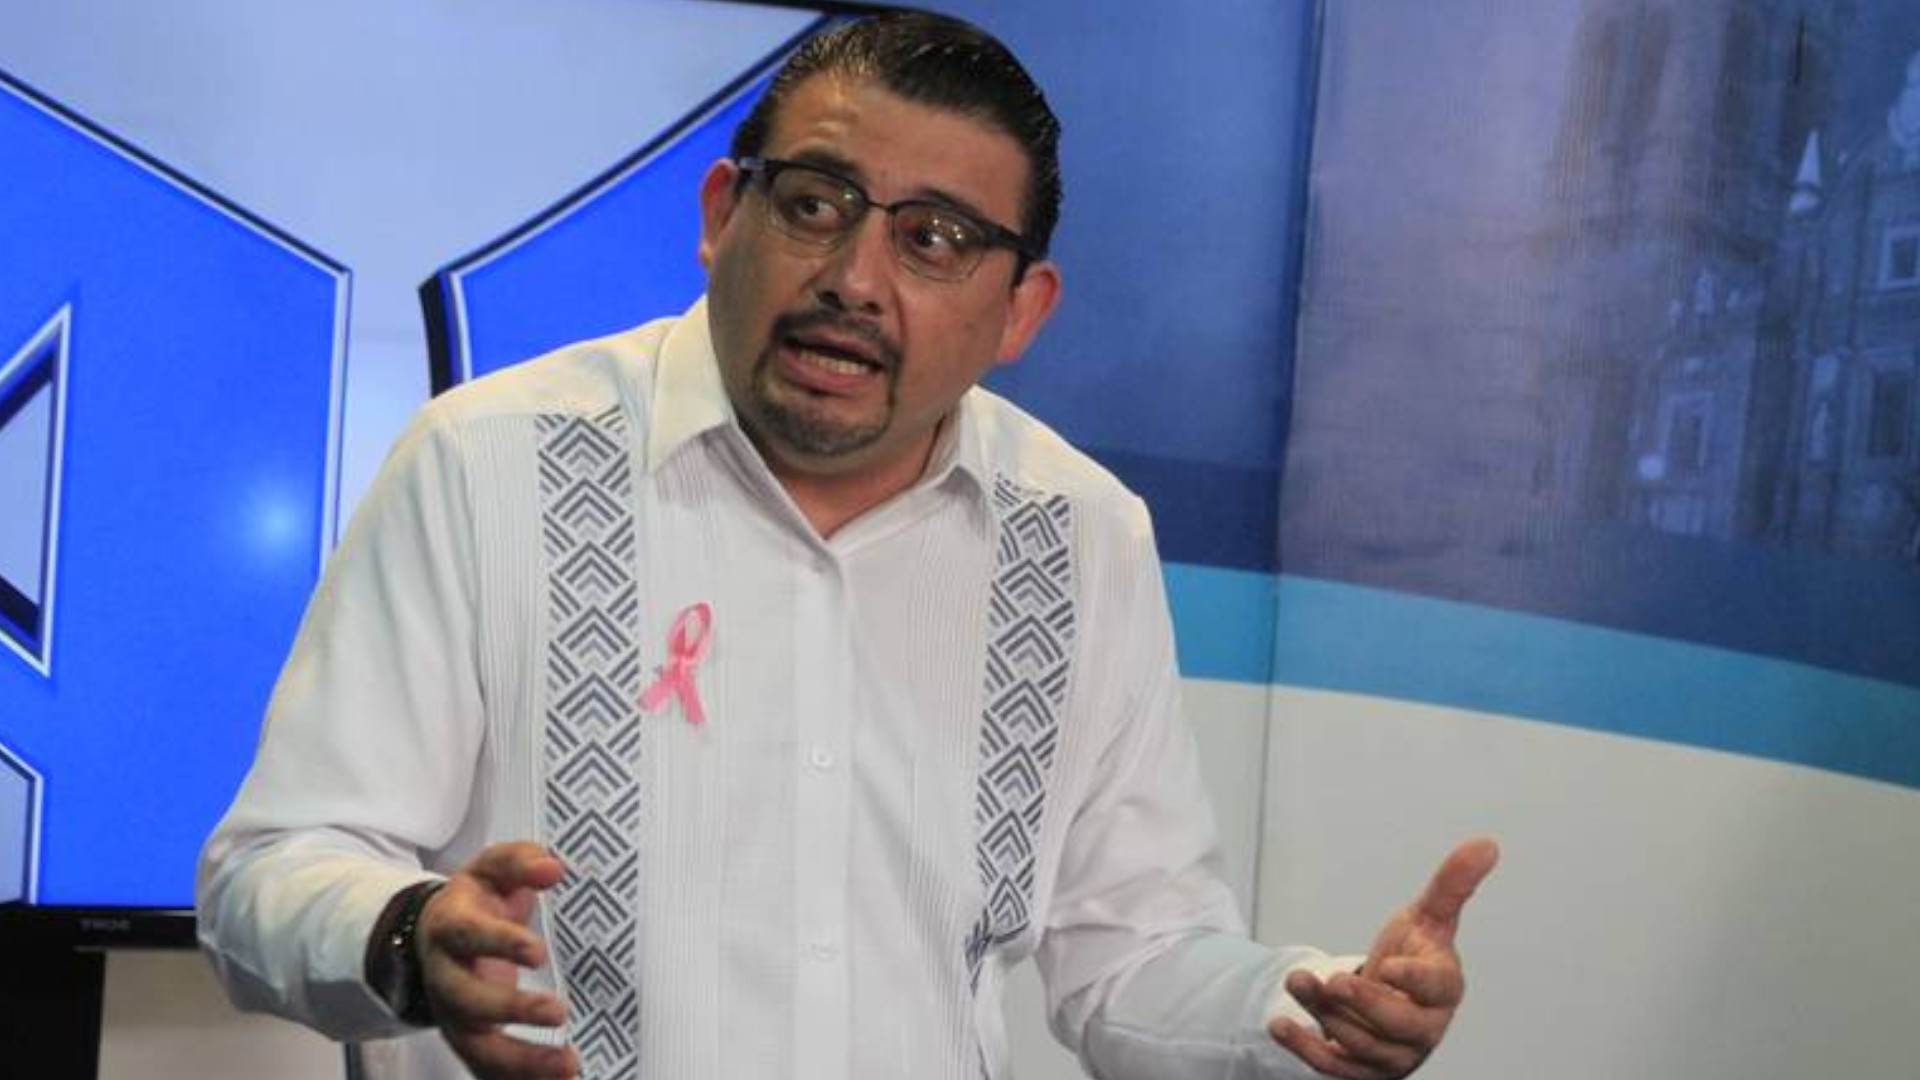 Eduardo Alcántara podría quedar fuera de la contienda electoral por violencia política de género